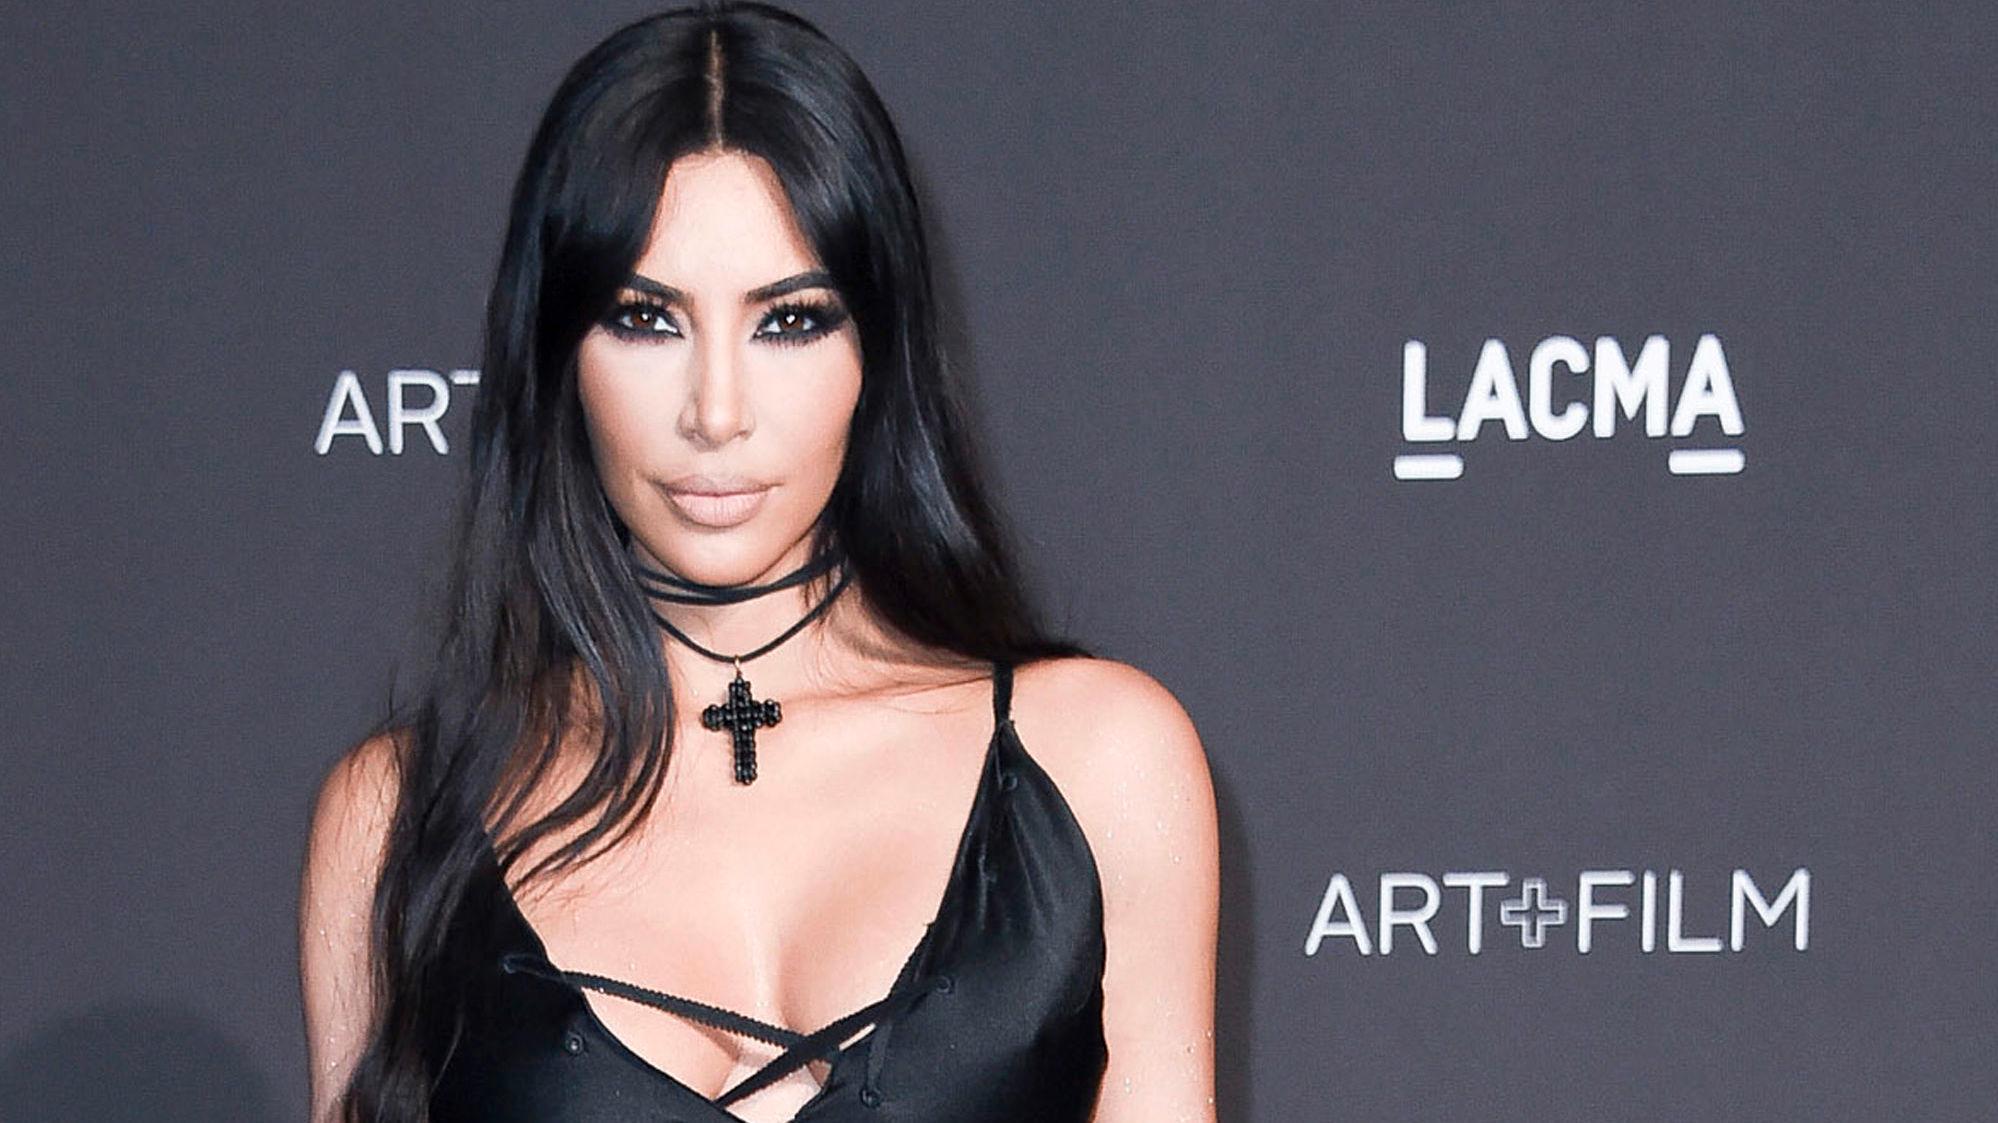 TAR TIL SEG KRITIKKEN: Kim Kardashian West skal skifte navn på undertøysmerket etter kritikk. Foto: AP